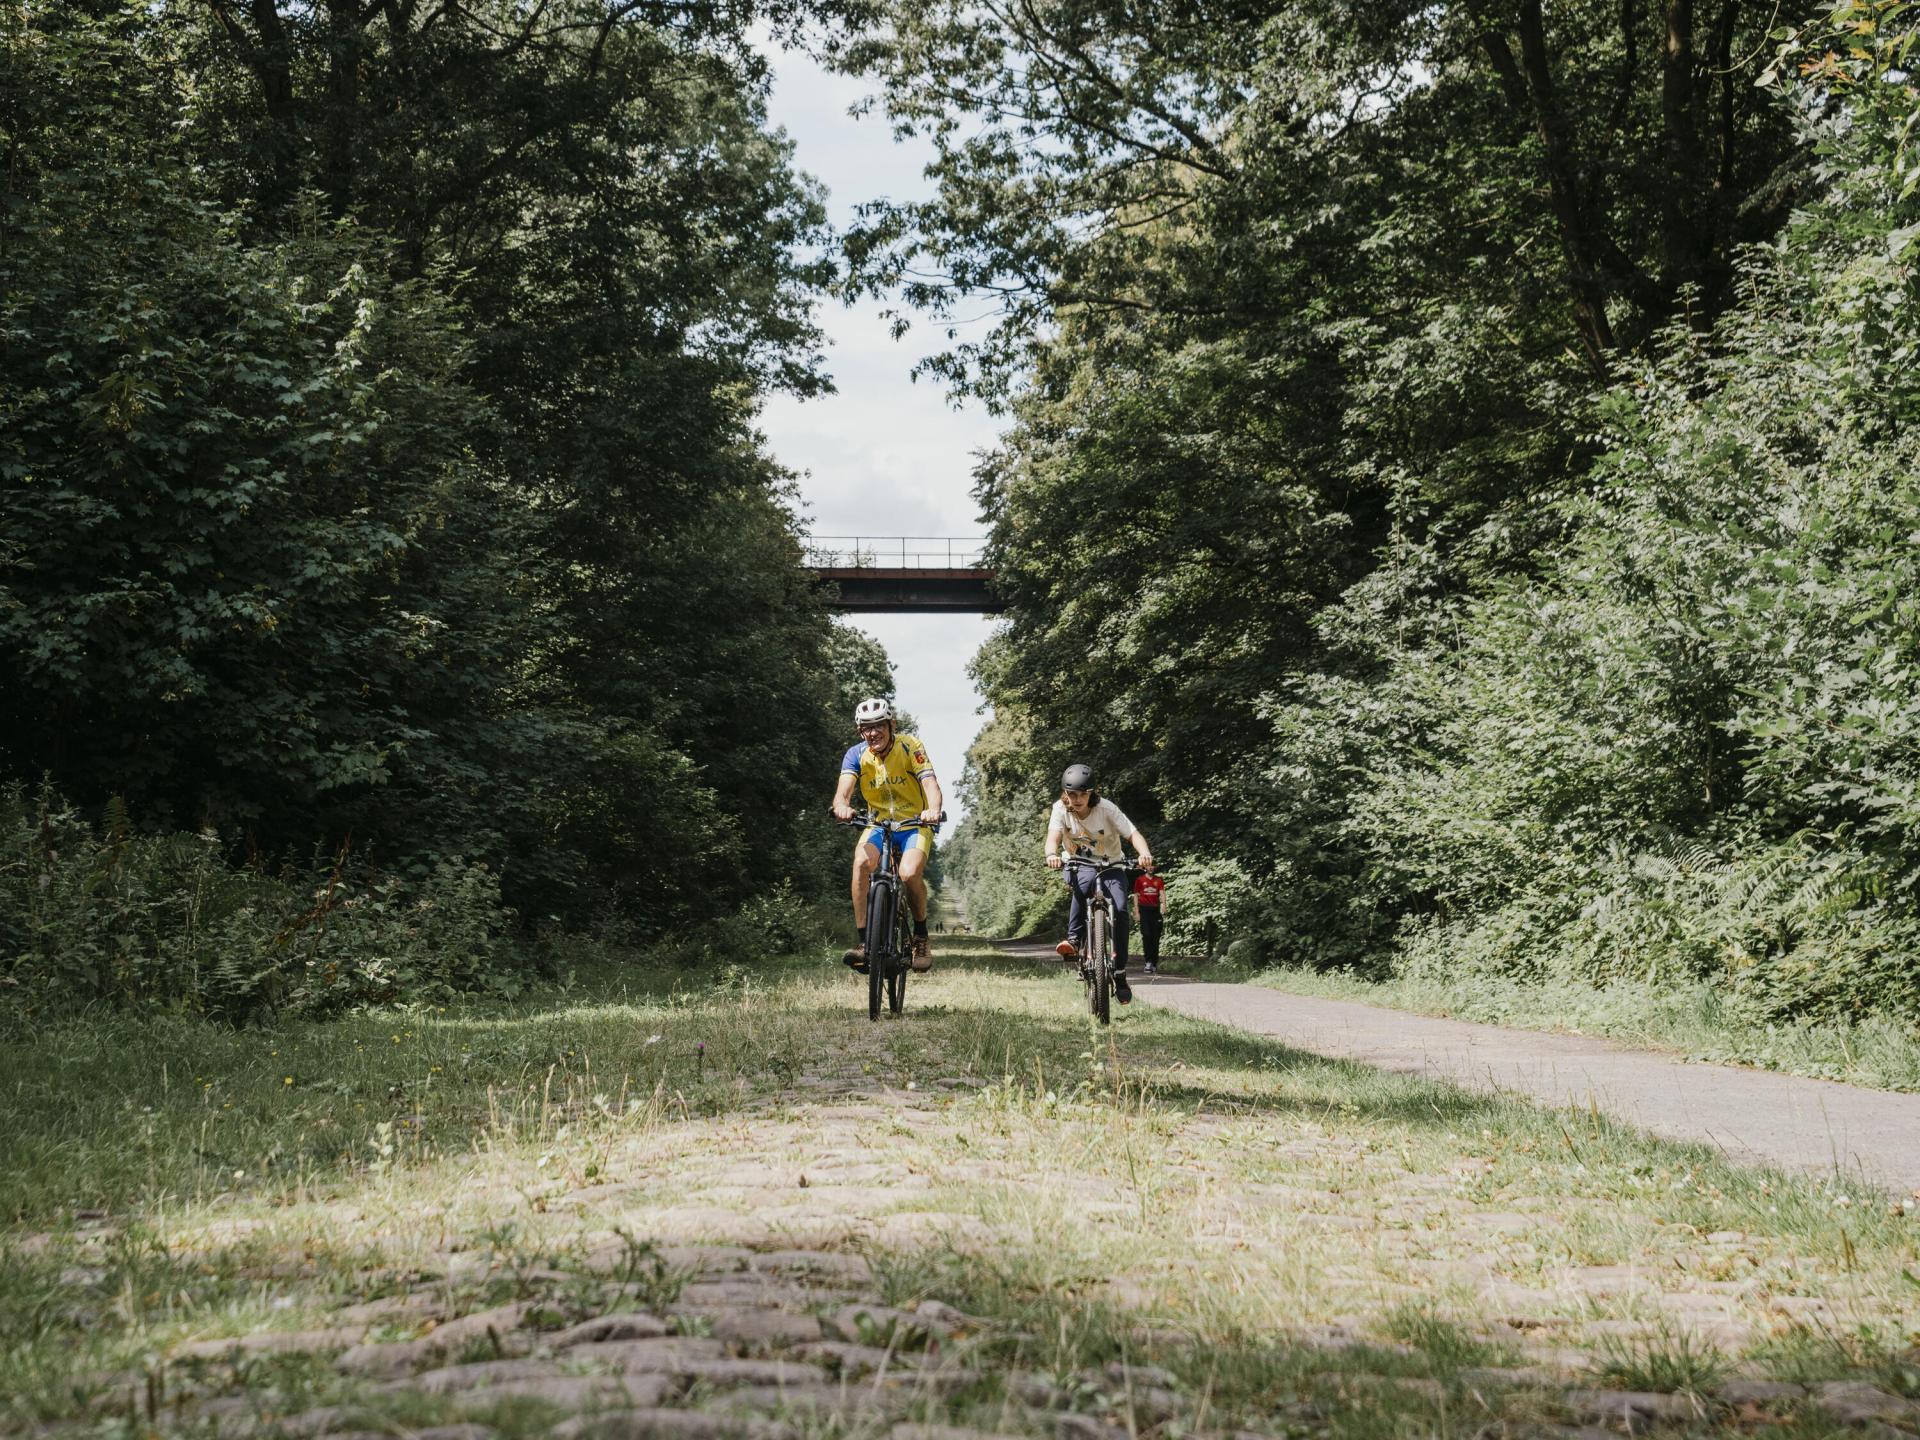 Une expérience à vivre : passer à vélo sur la trouée d'Arenberg, l'un des segments de courses les plus connus dans le monde